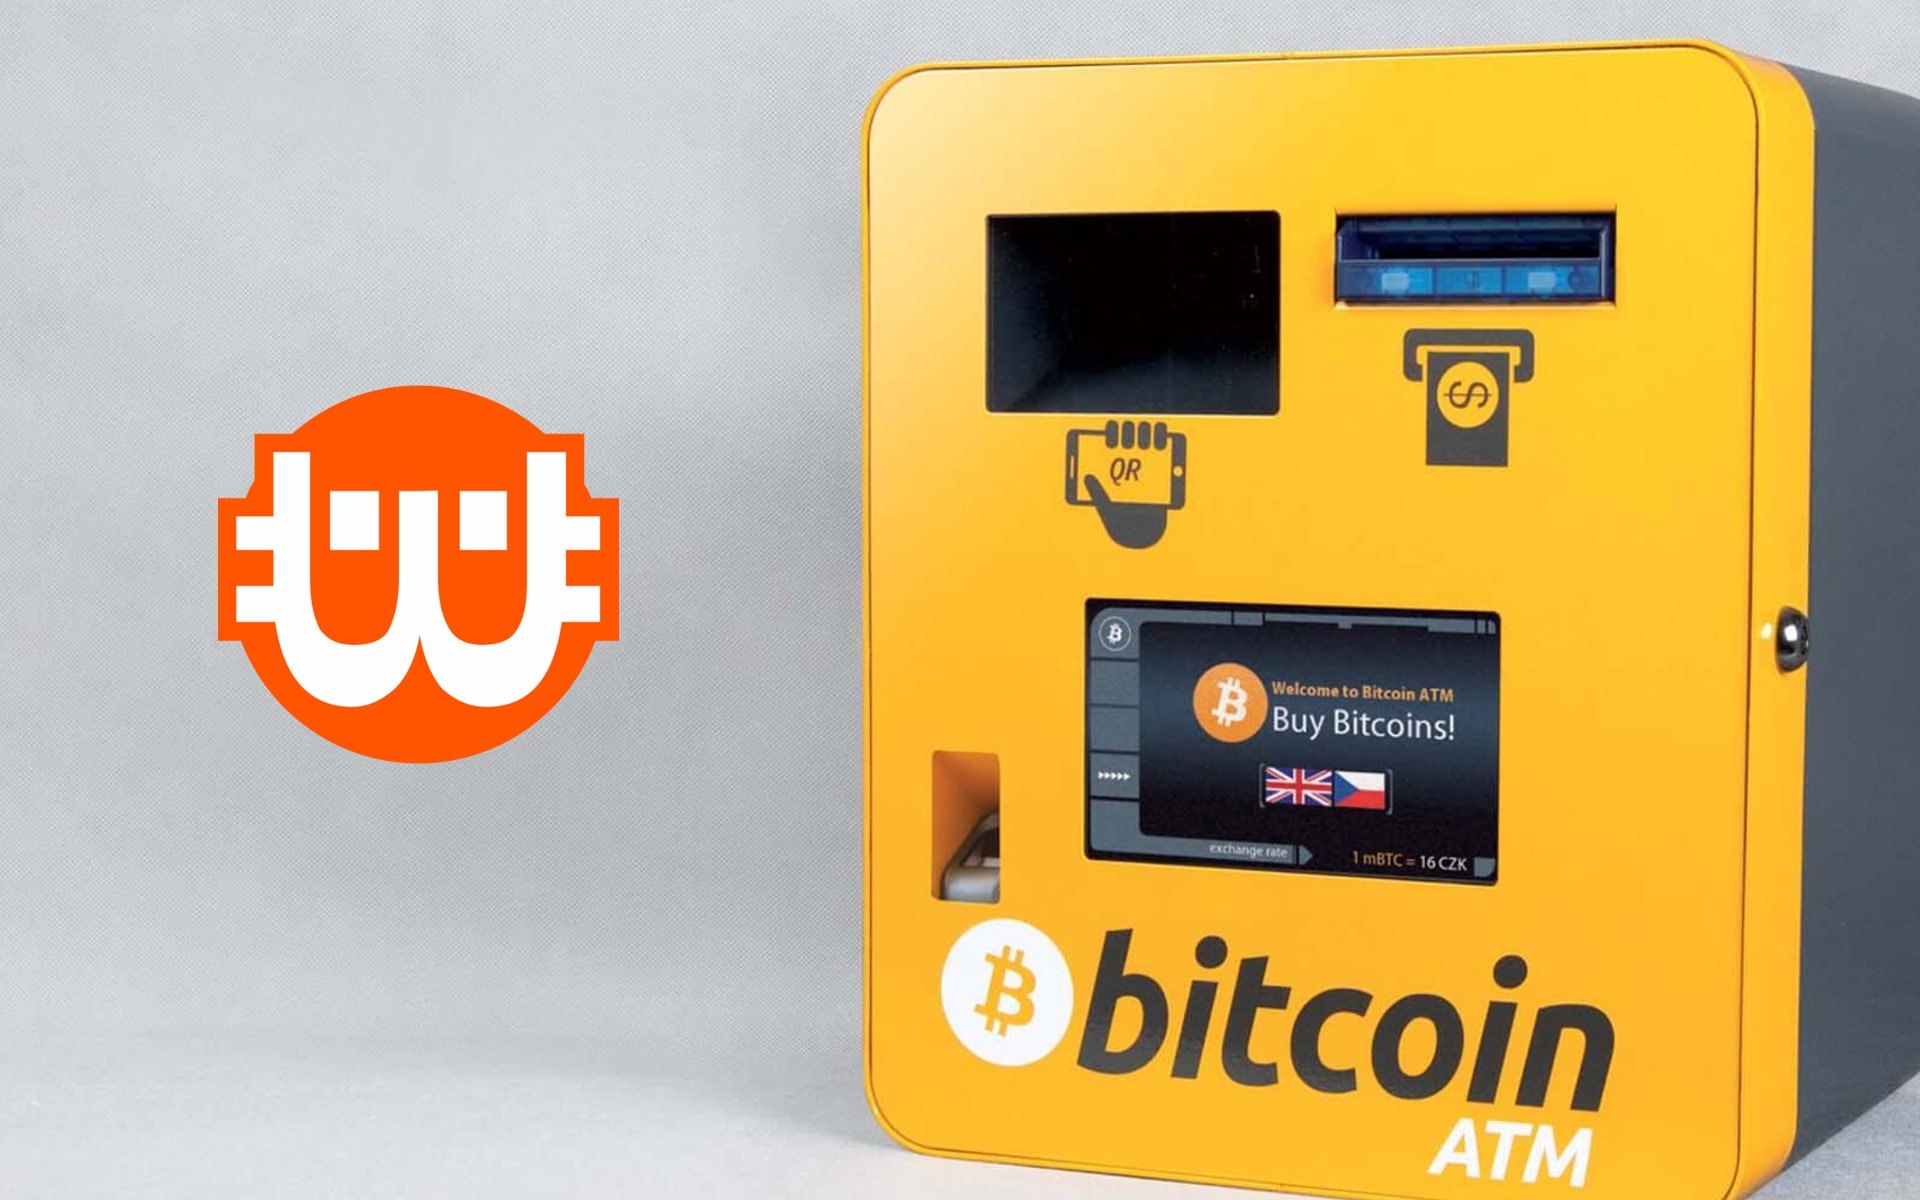 Πώς λειτουργούν τα Bitcoin ATM στην Ελλάδα κατά την τουριστική περίοδο αιχμής;